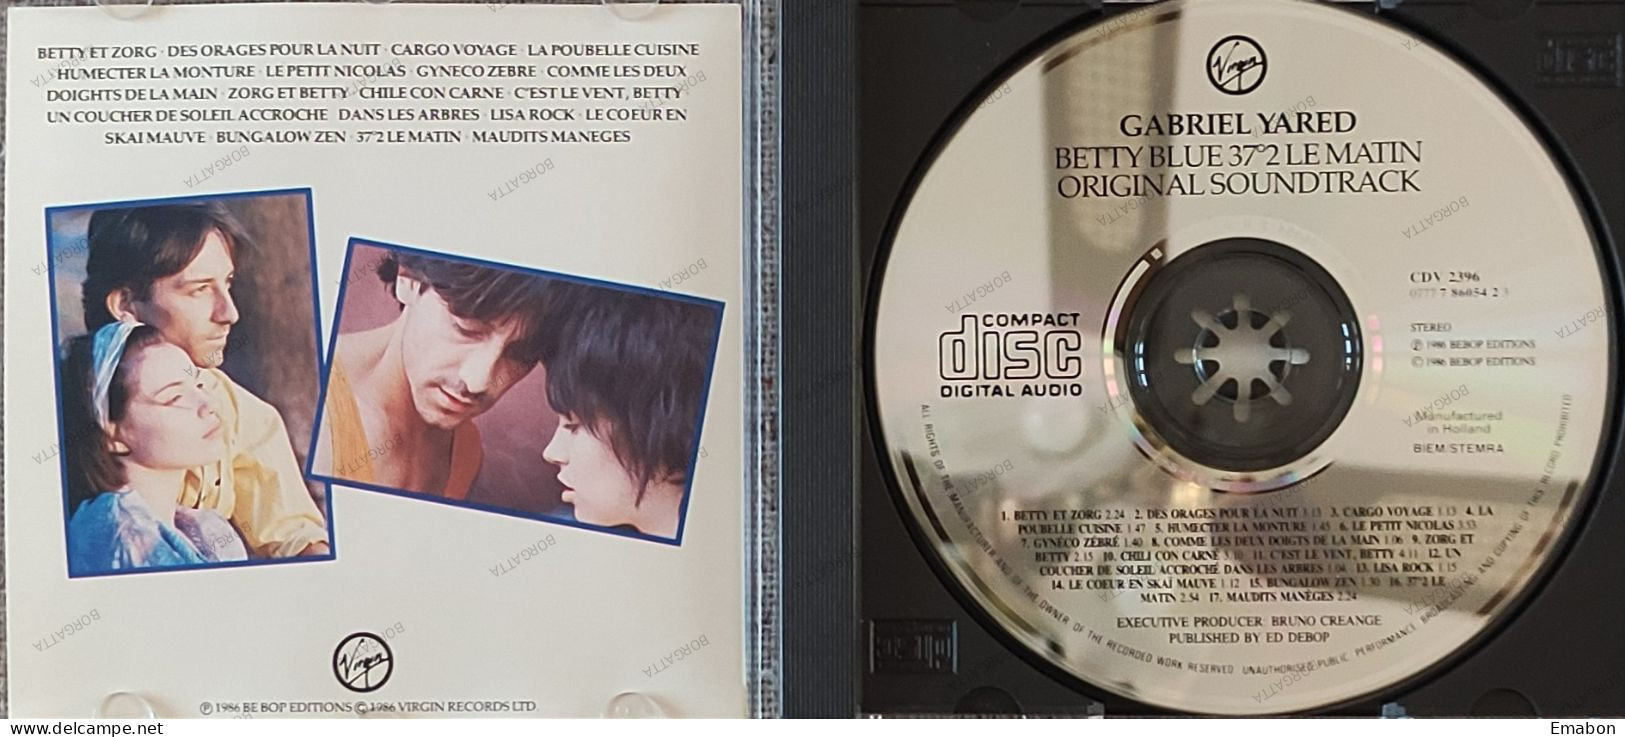 BORGATTA - FILM MUSIC  - Cd GABRIEL YARED - BETTY BLUE 37°2 LE MATIN - VIRGIN 1986 - USATO In Buono Stato - Soundtracks, Film Music